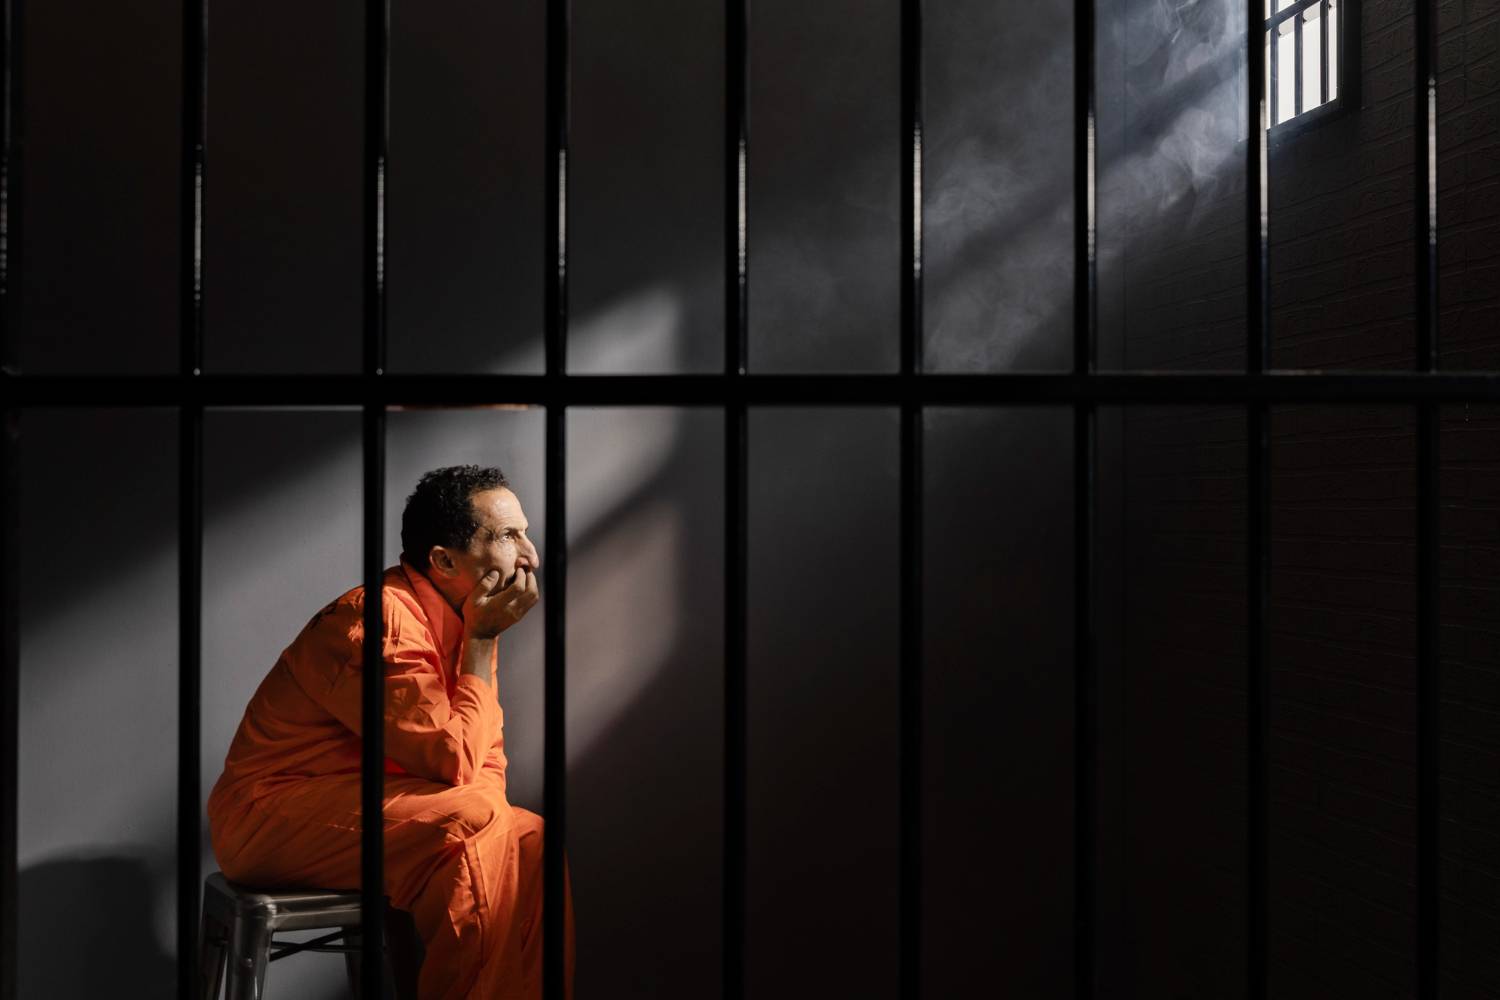 Eliberarea din închisoare – Cum se face reintegrarea sociala